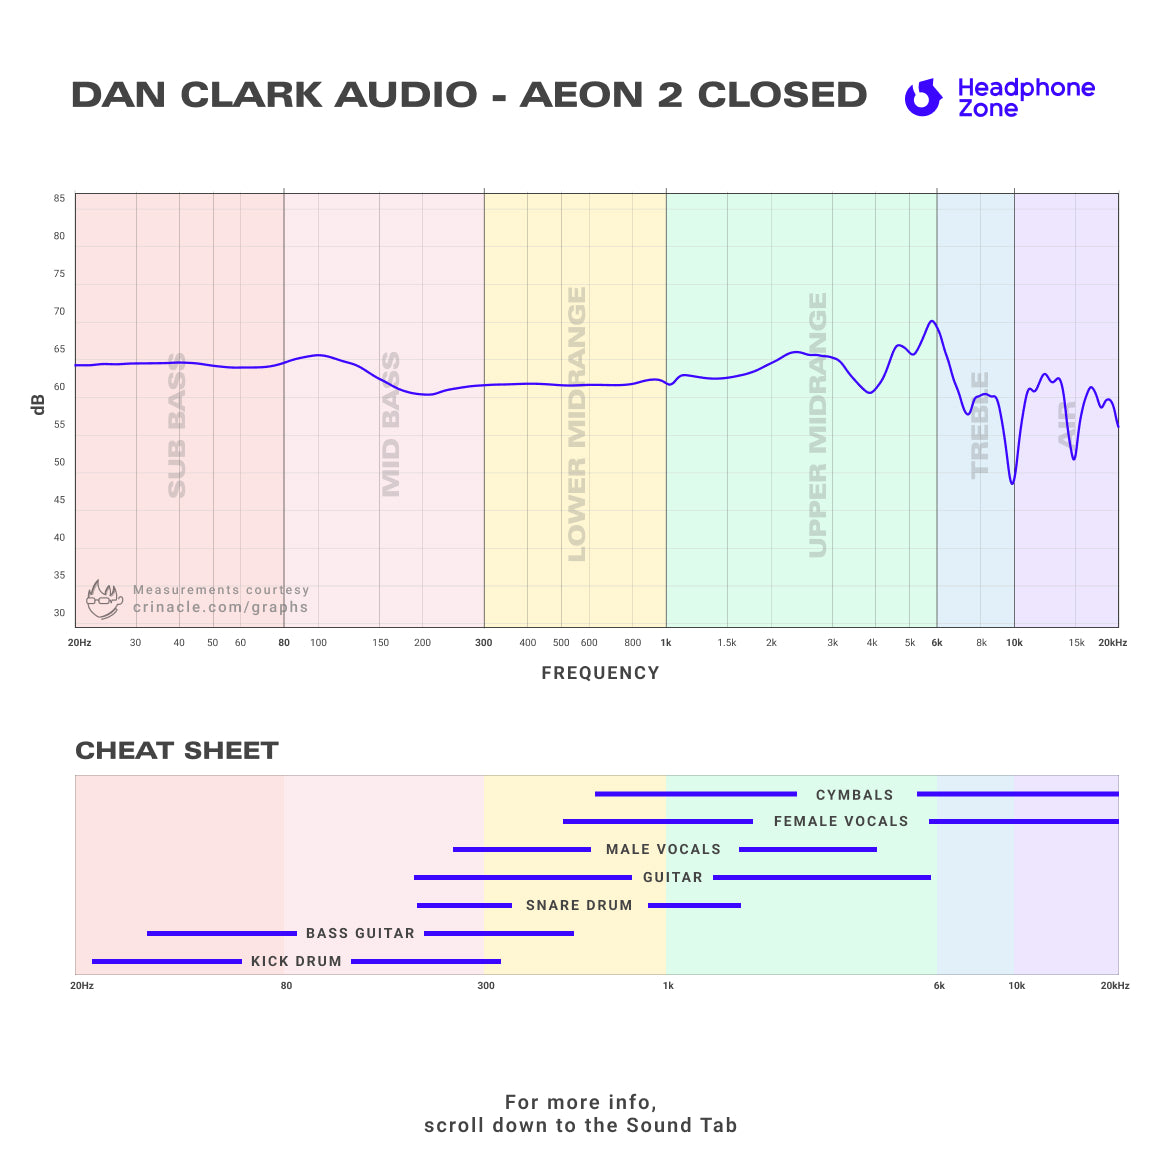 Dan Clark Audio - AEON 2 Closed